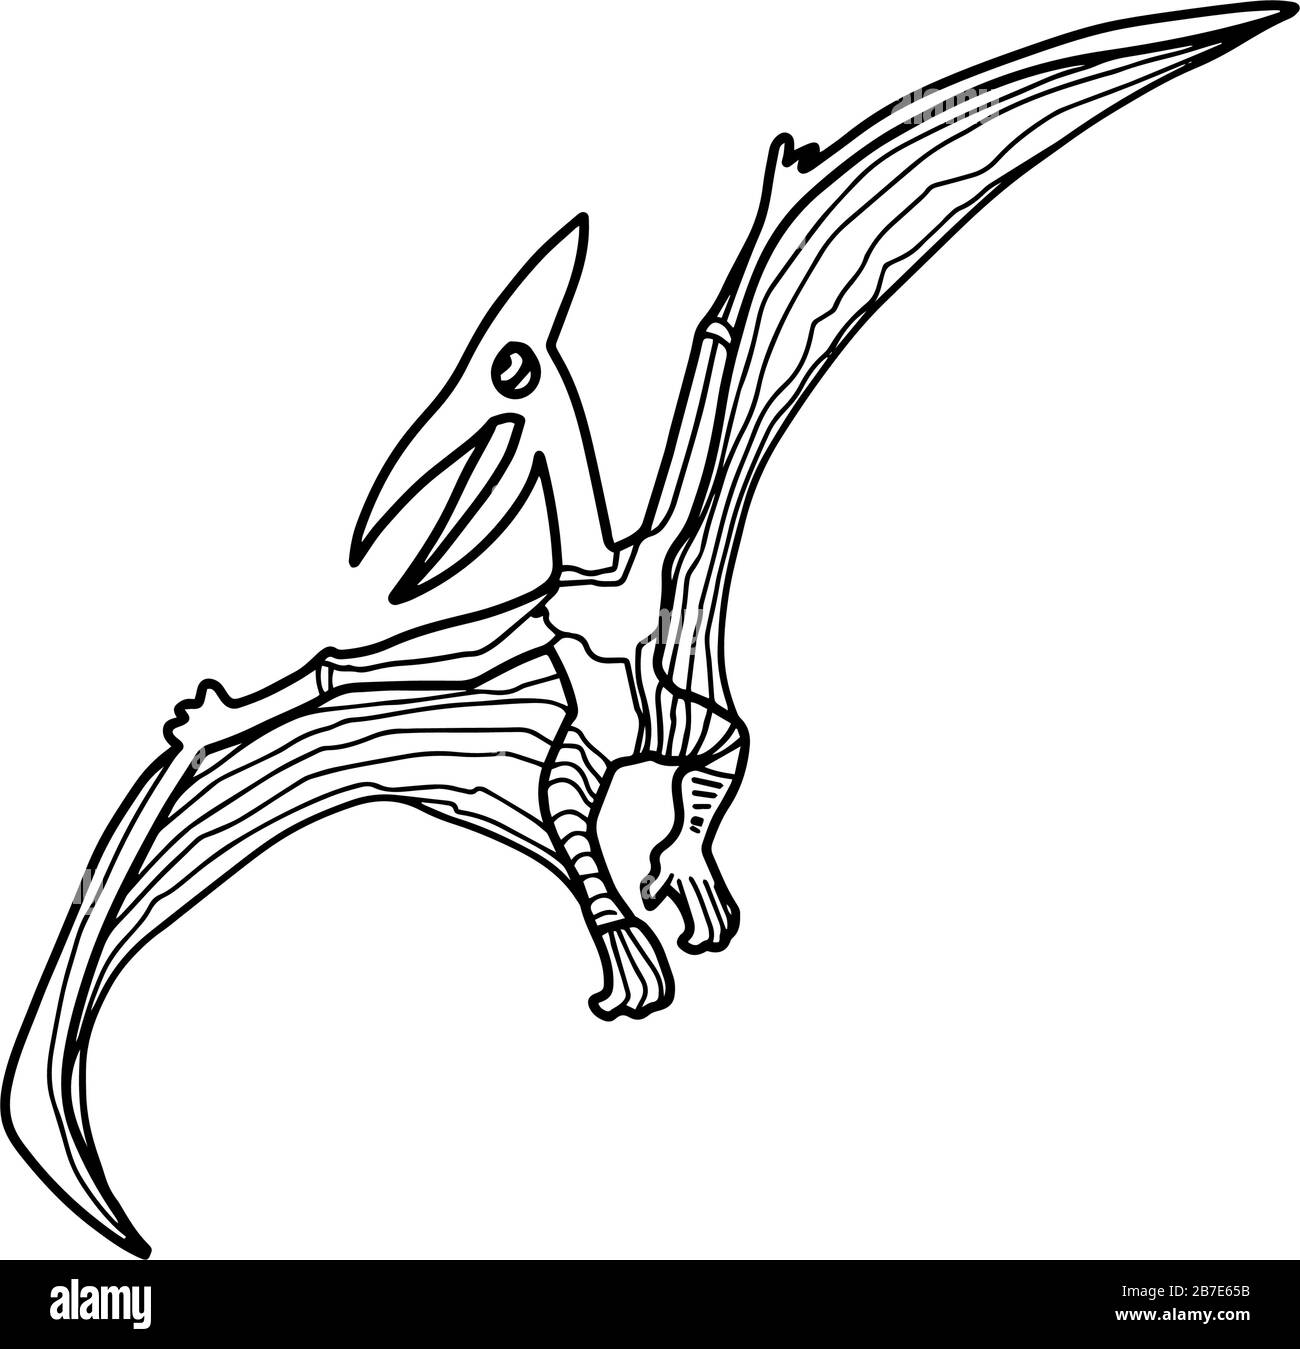 Livre de coloriage Pterodactyl ou Pteranodon pour enfants et adultes.Page de coloriage antistress dessinée à la main. Illustration du contour vectoriel T Rex Illustration de Vecteur